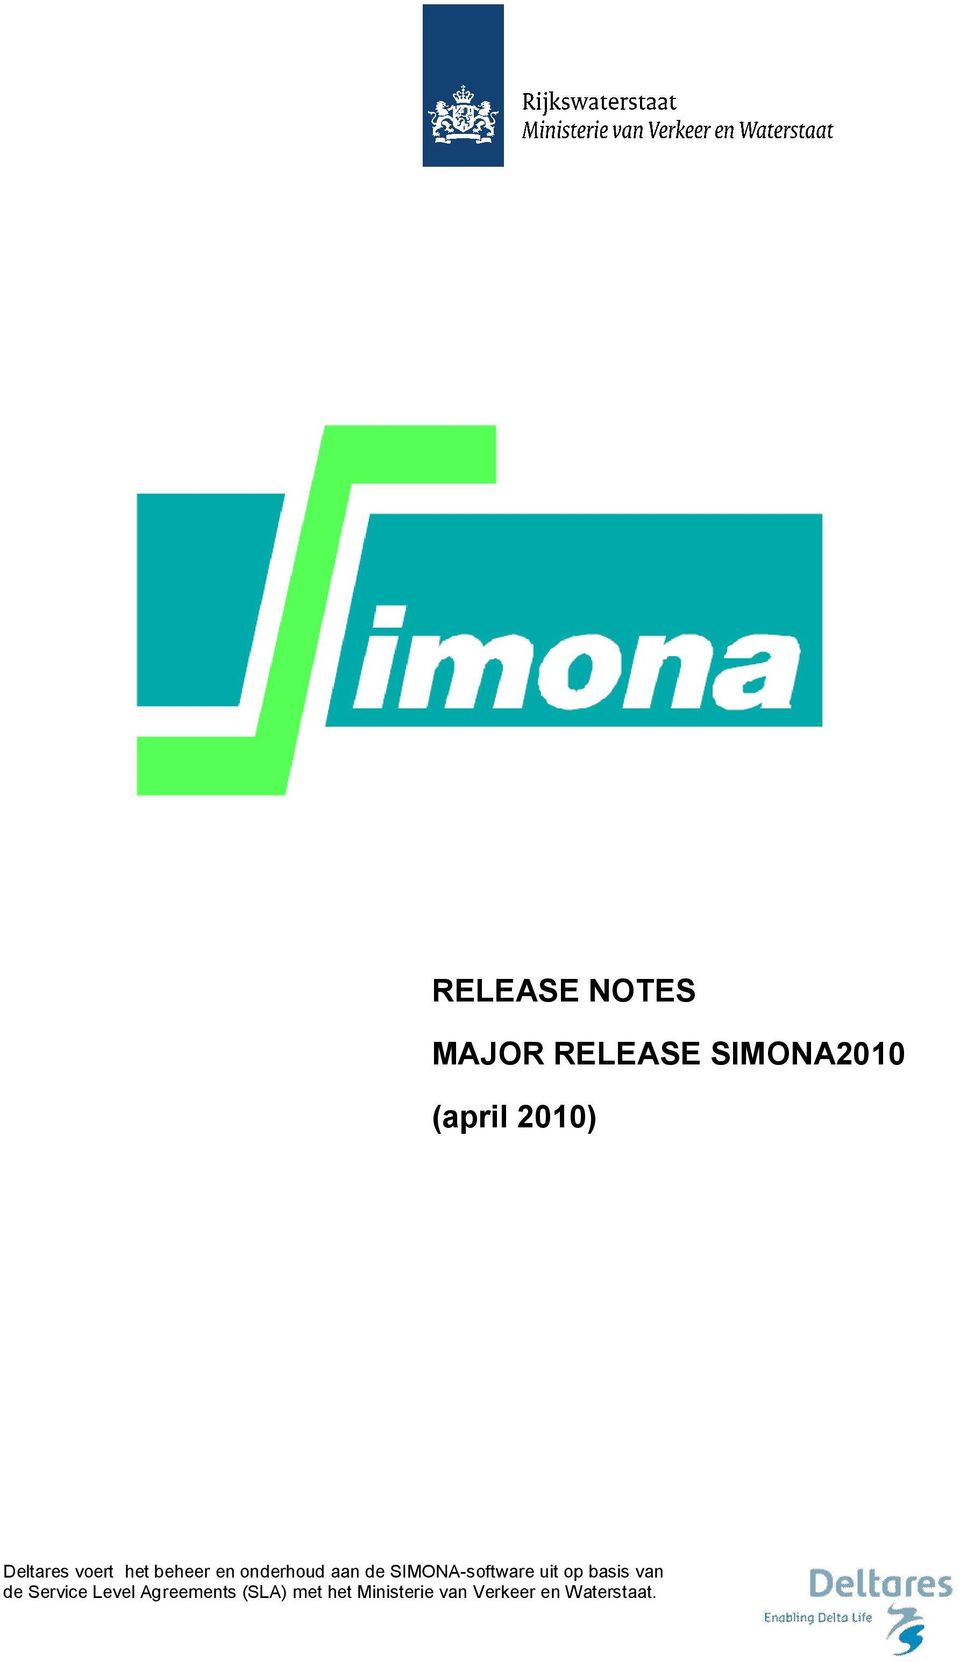 SIMONA-software uit op basis van de Service Level